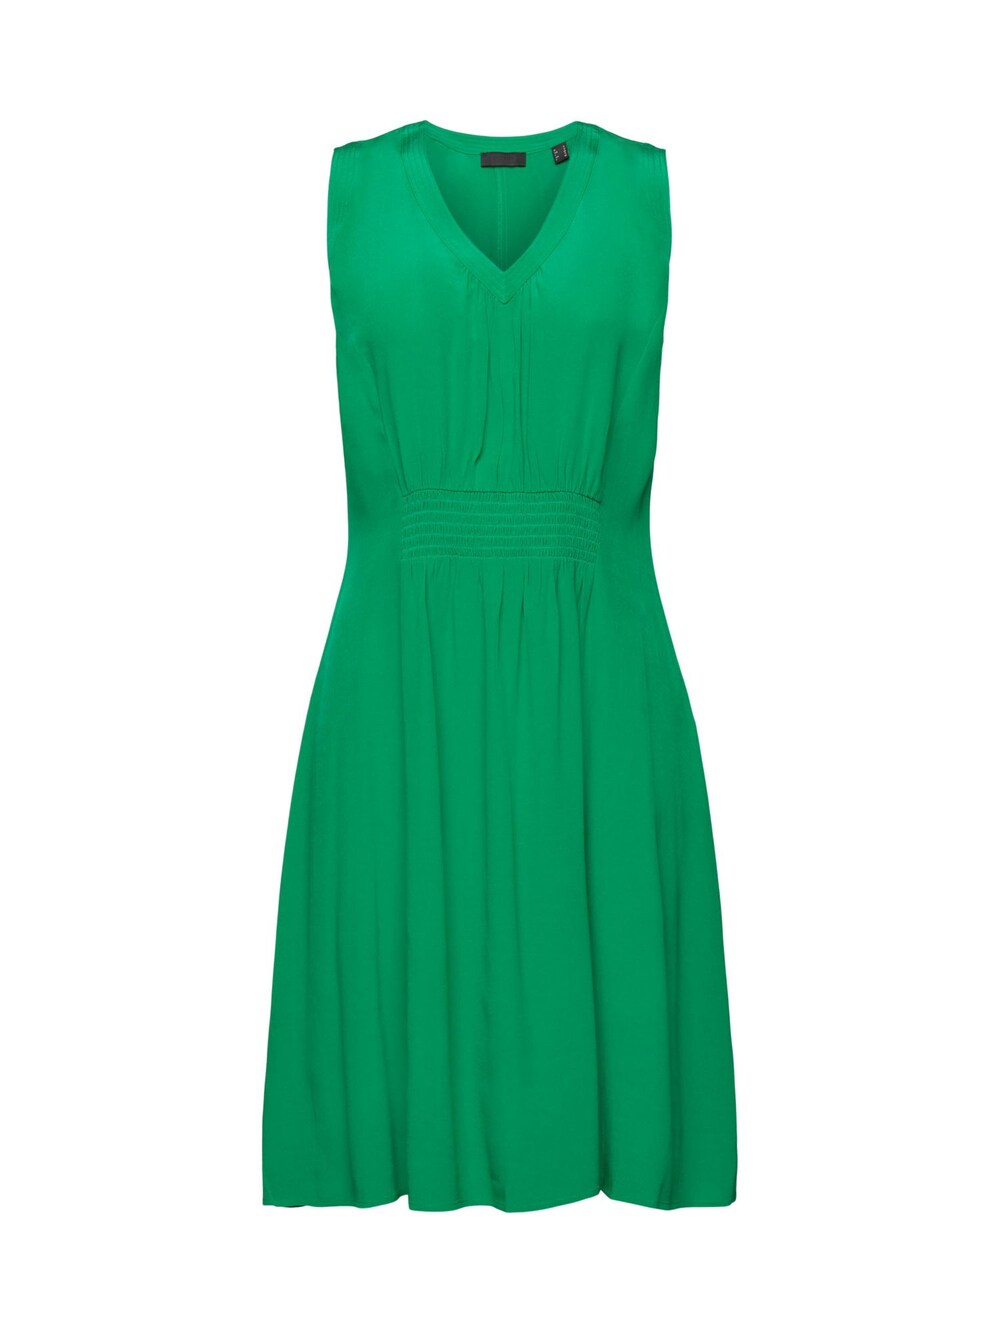 Платье Esprit, трава зеленая флуоресцентная лампа большая ветка сосны куст зеленая трава цветок строительные кирпичи 2417 2423 4727 6255 30176